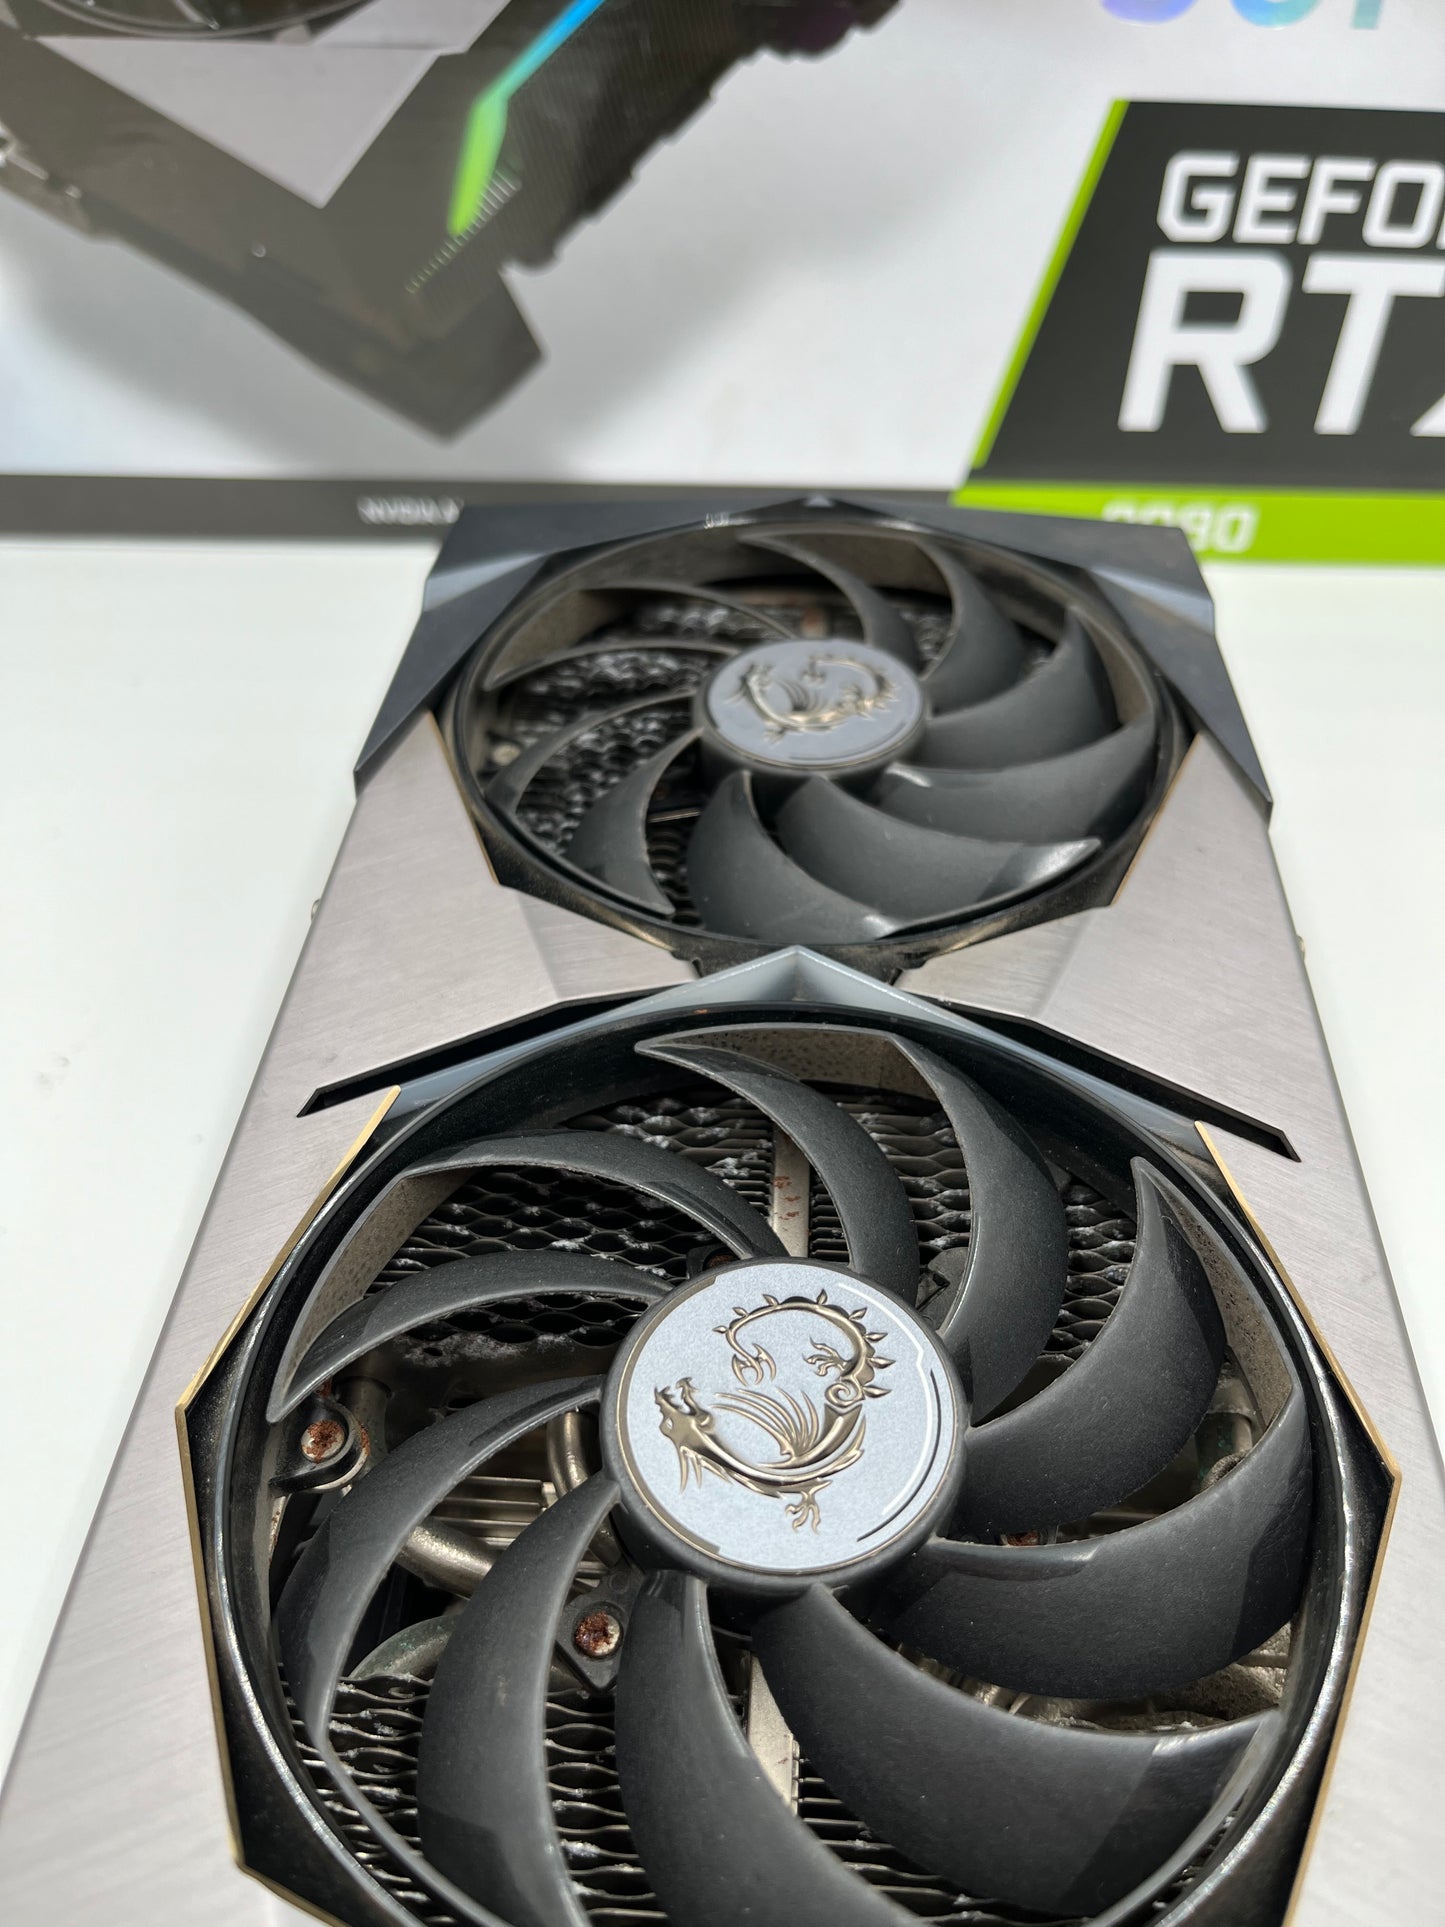 MSI Nvidia GeForce RTX 3070 Suprim X 3070 8GB GDDR6 - Was £329.99 - B